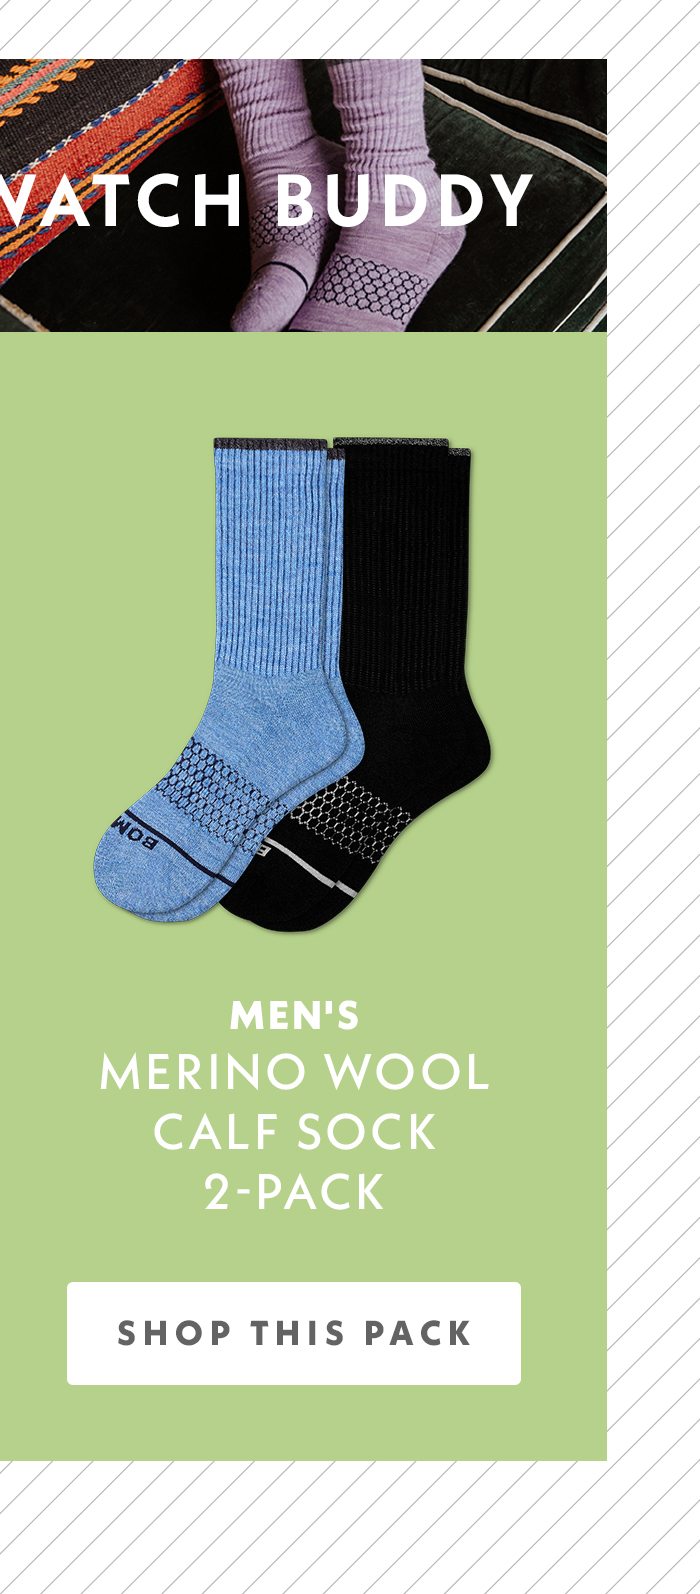 Men's Merino Wool Calf Sock 2-Pack | Shop This Pack